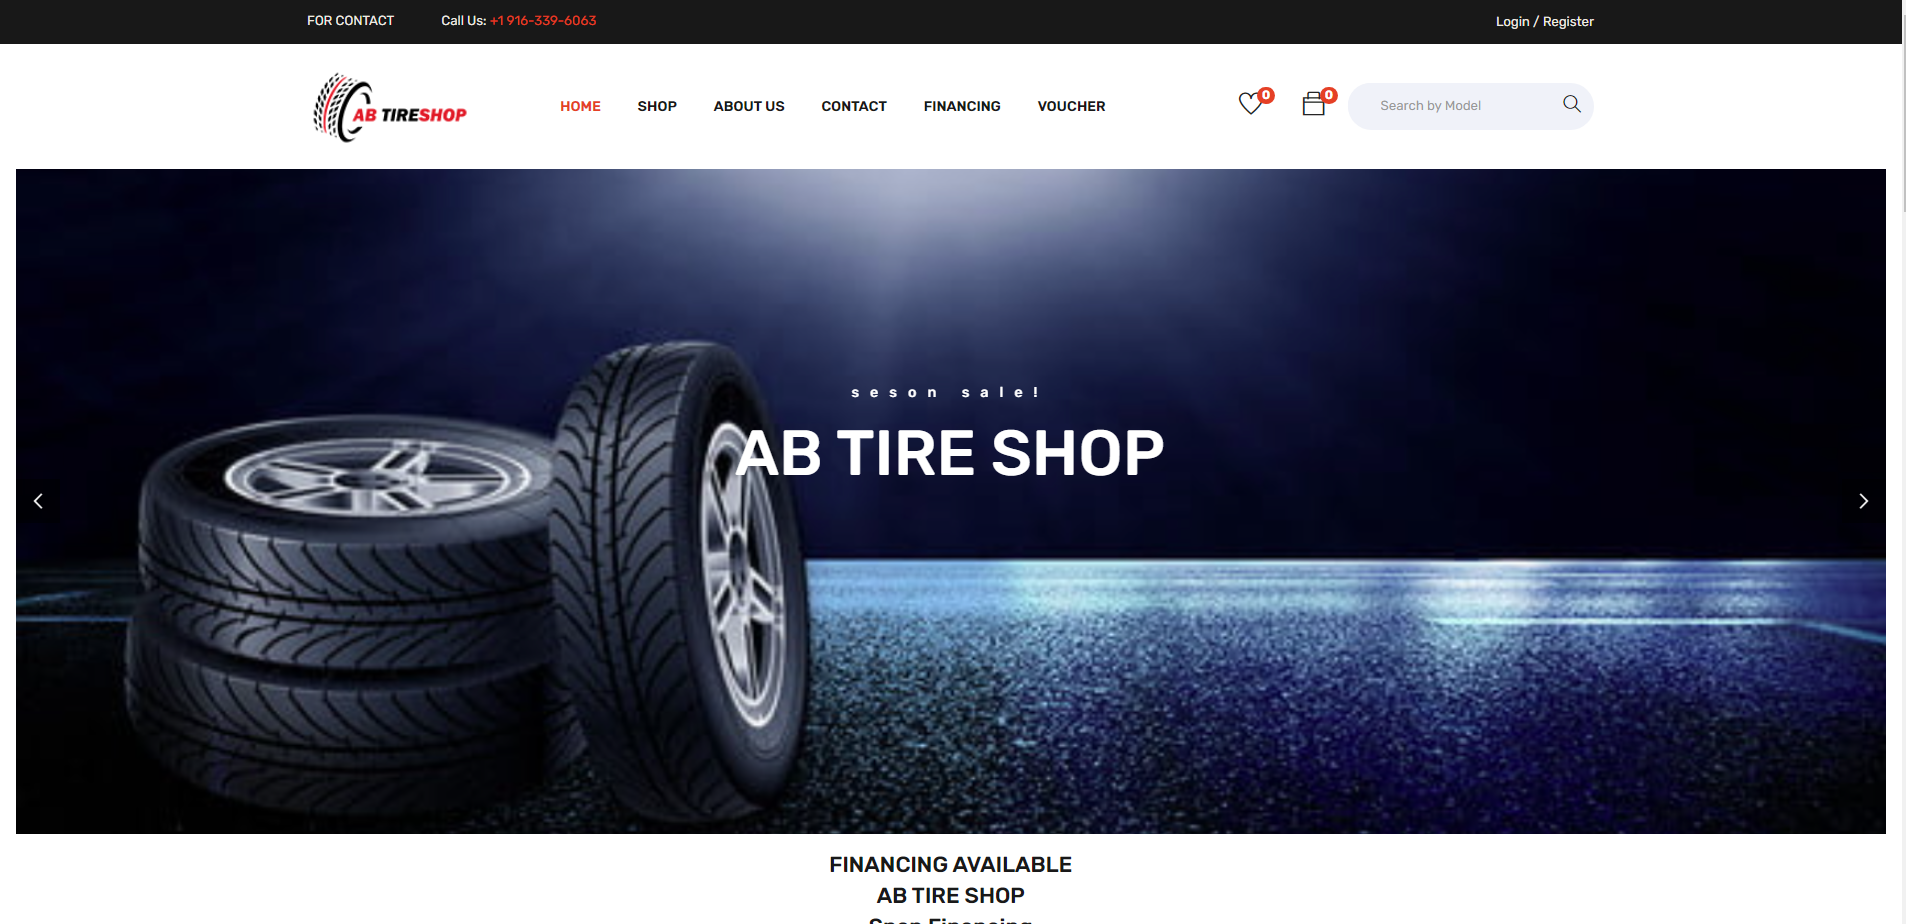 AB Tire Shop